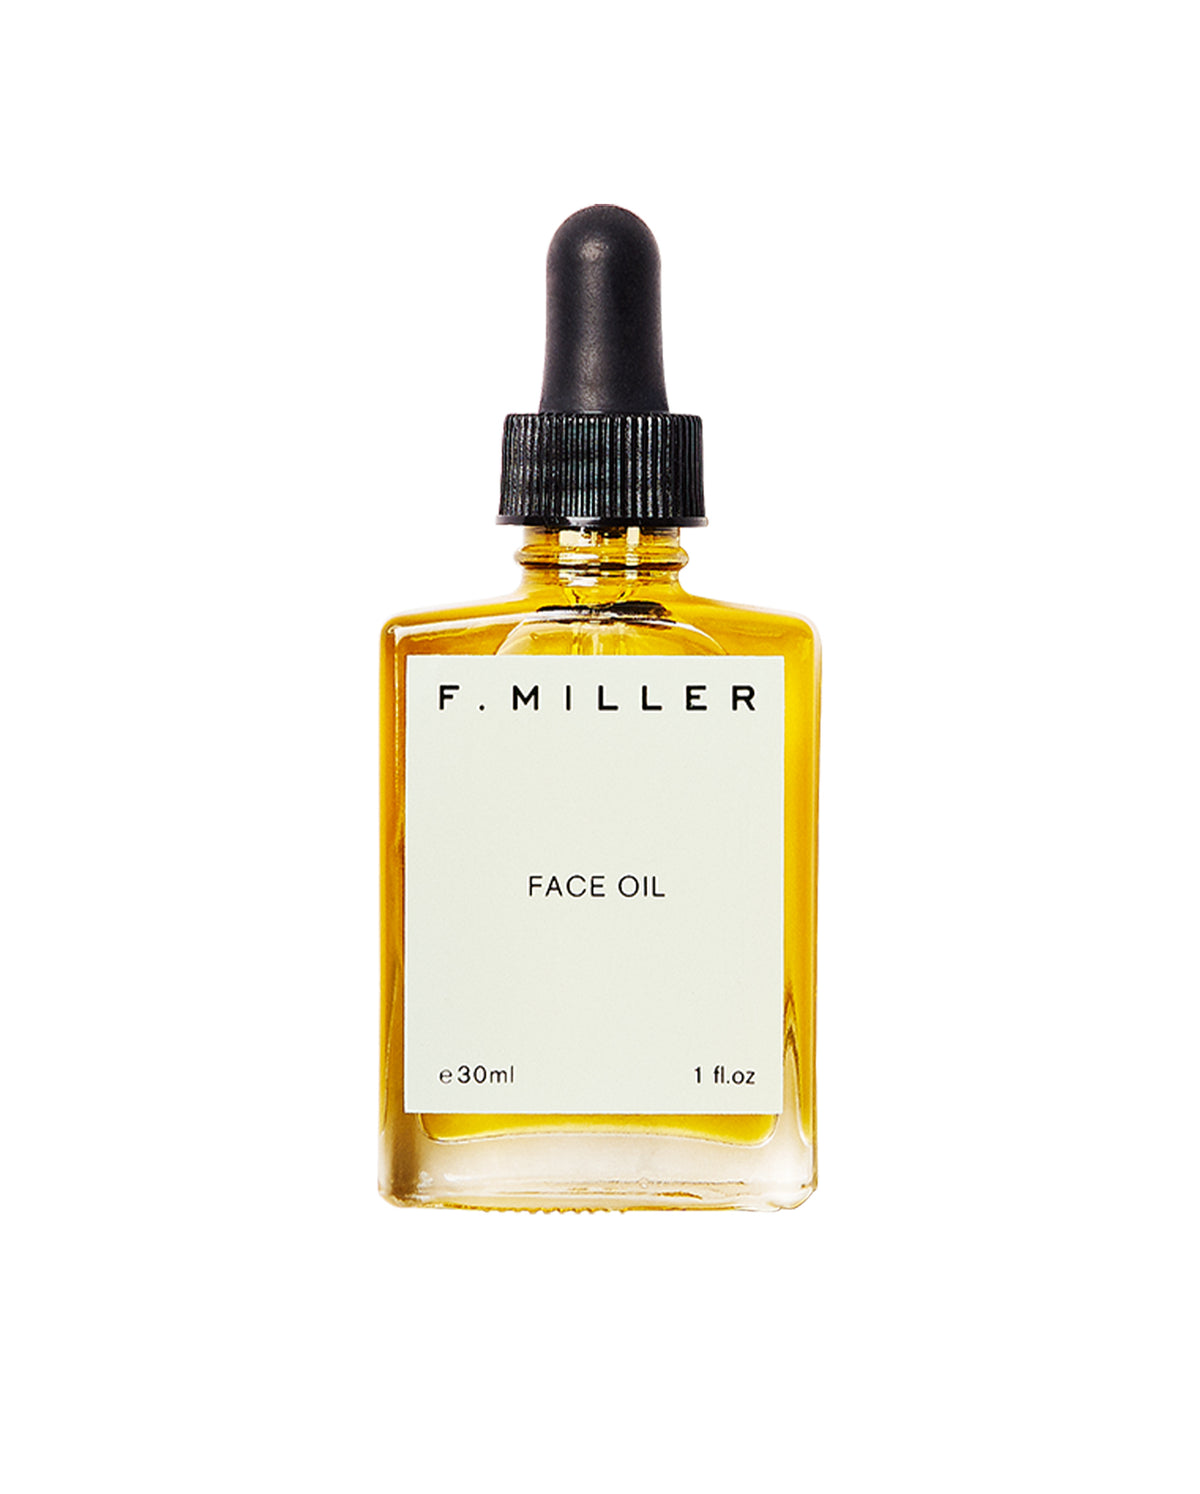 F. Miller Face Oil